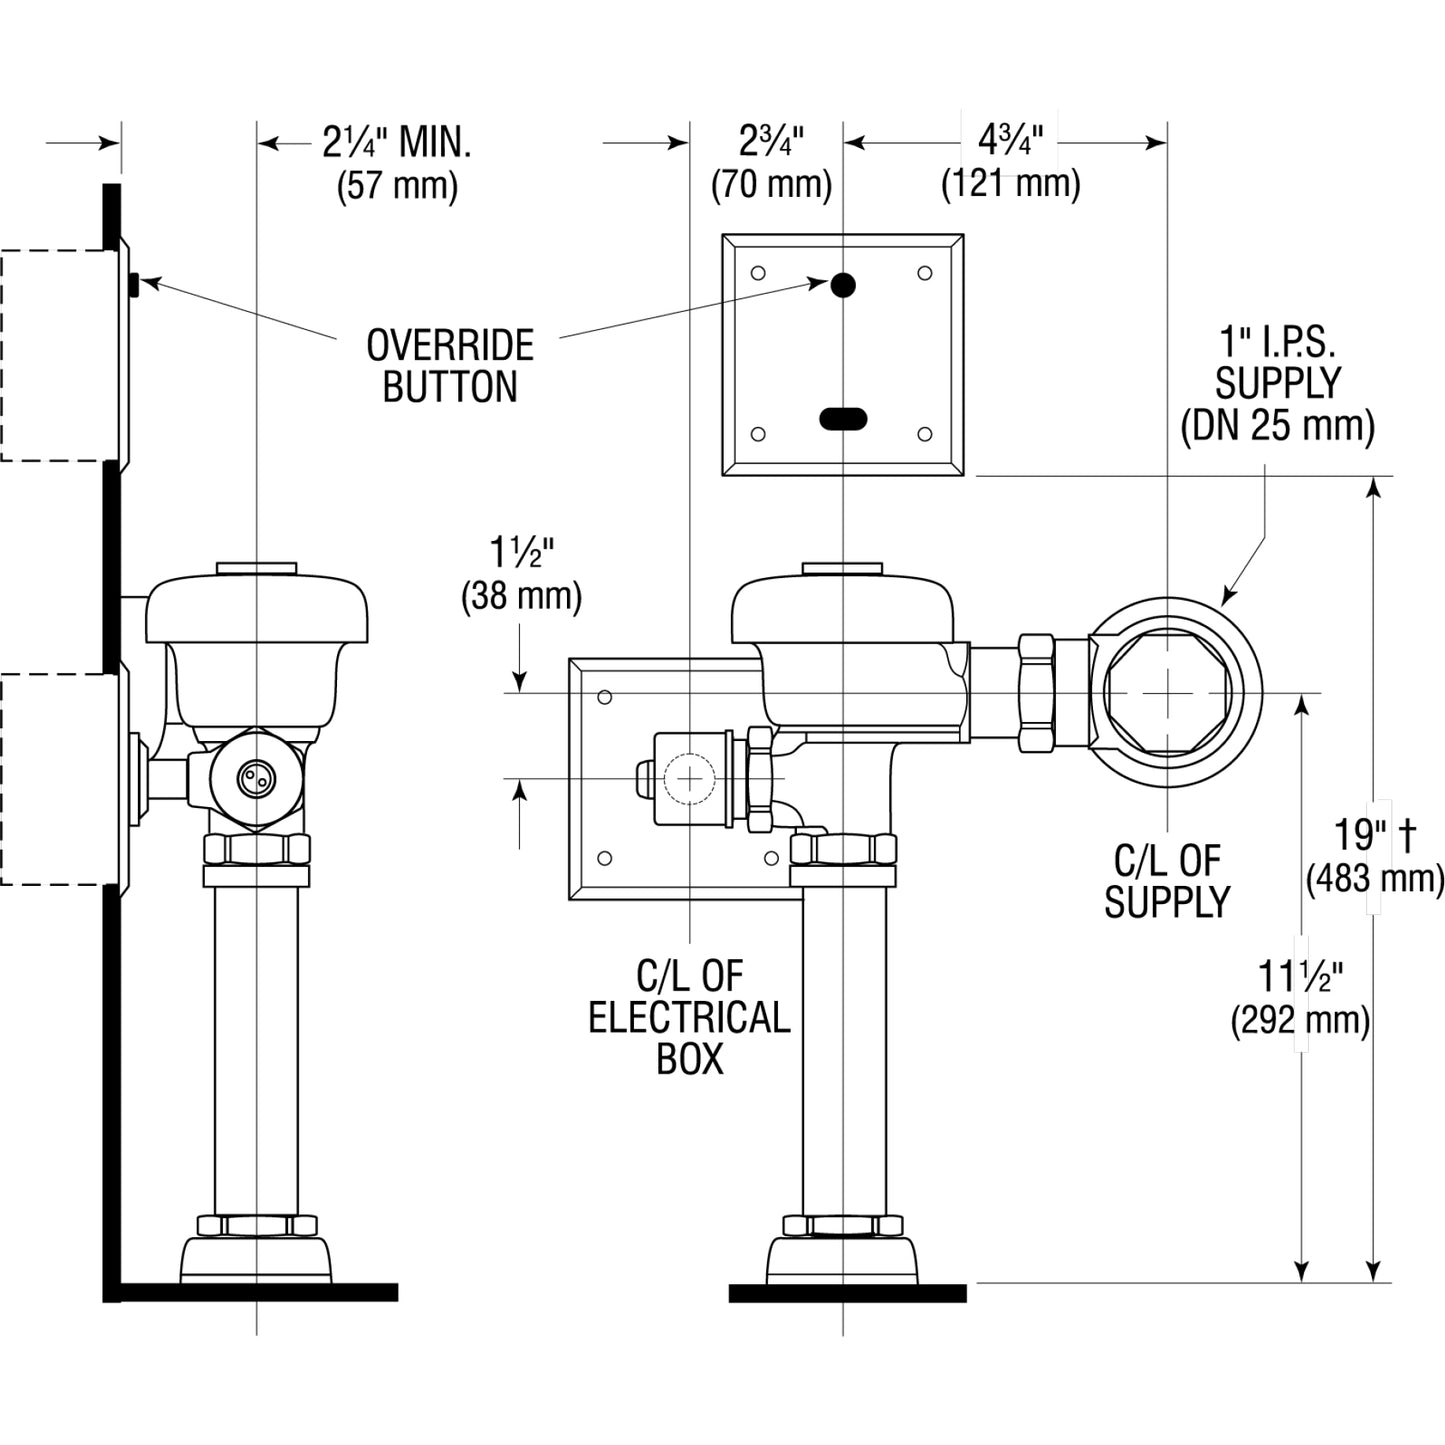 3770000 - 111 ESS Sensor Toilet Flushometer - Top Spud - 1.6 GPF